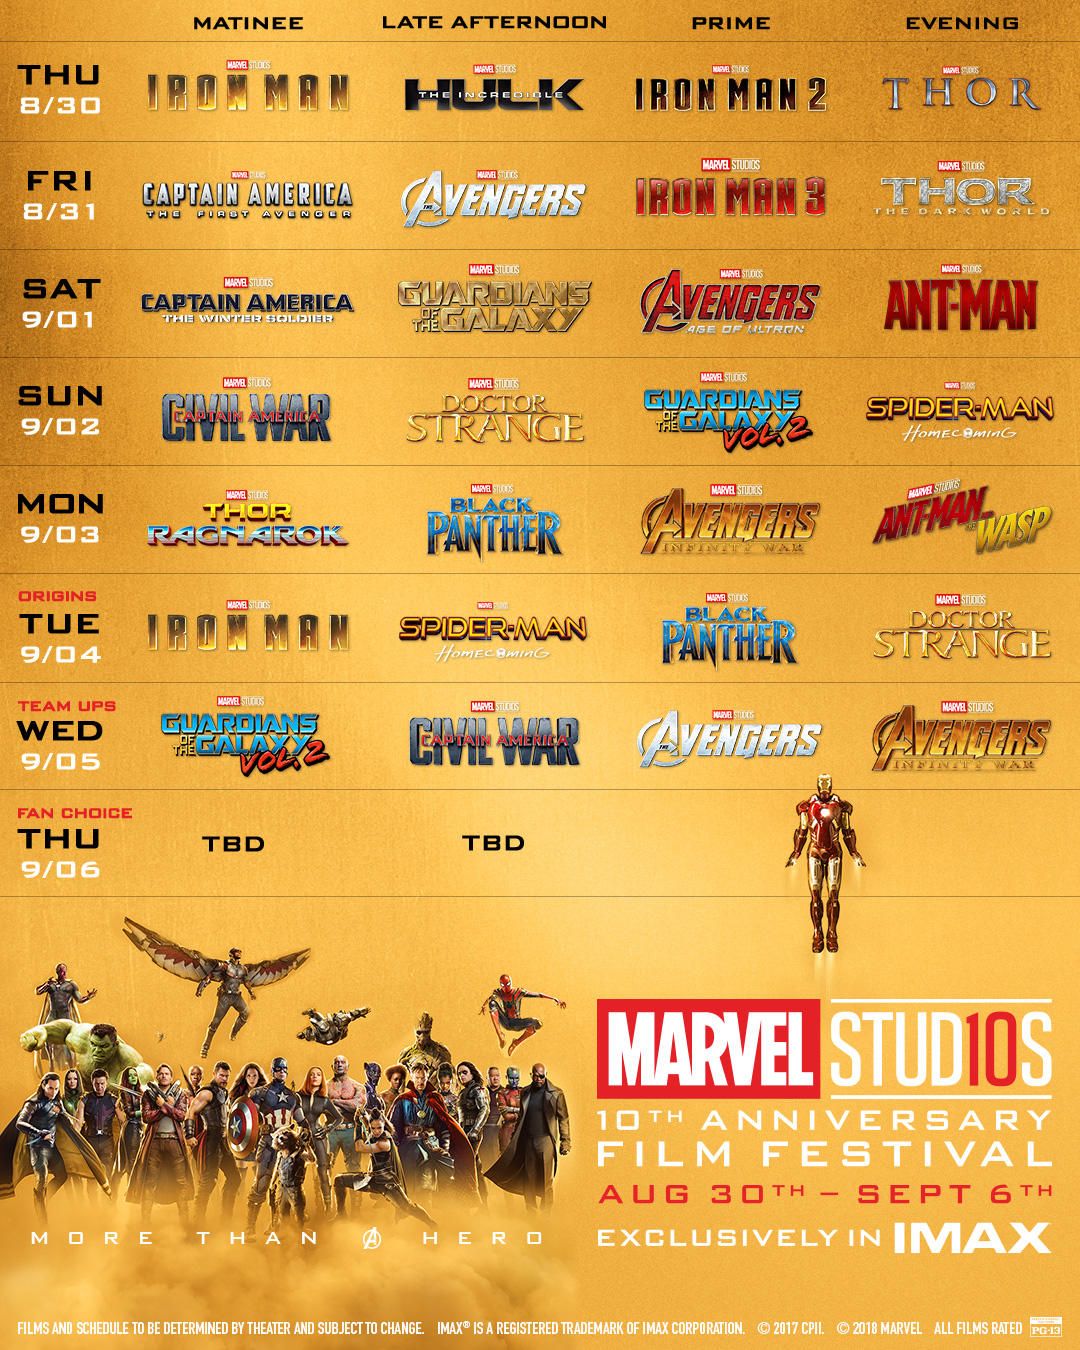 Marvel Studios Film Festival